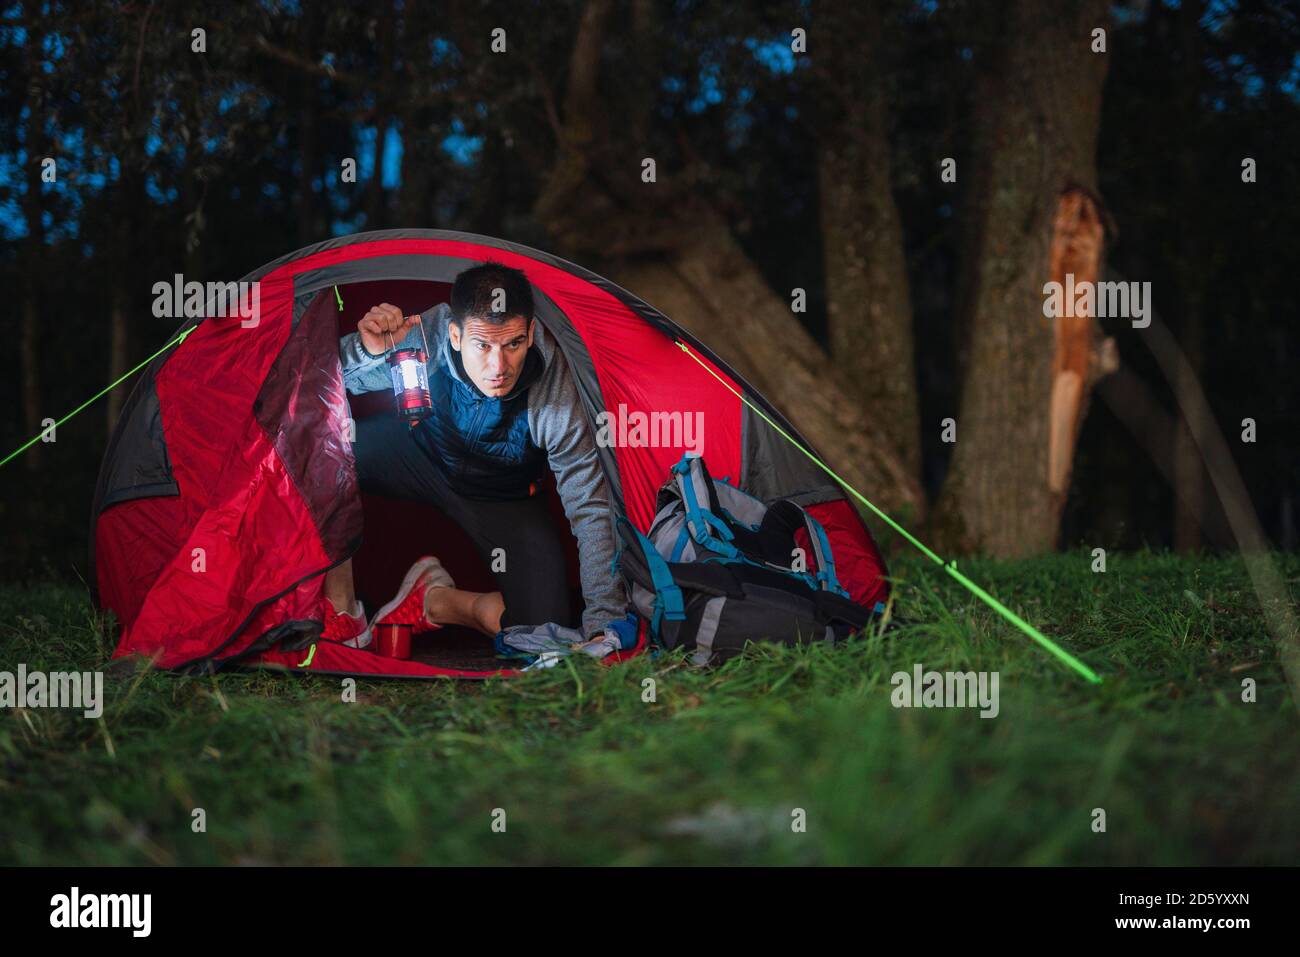 Mann, der in Estland campte, in seinem Zelt sitzend, latern haltend Stockfoto